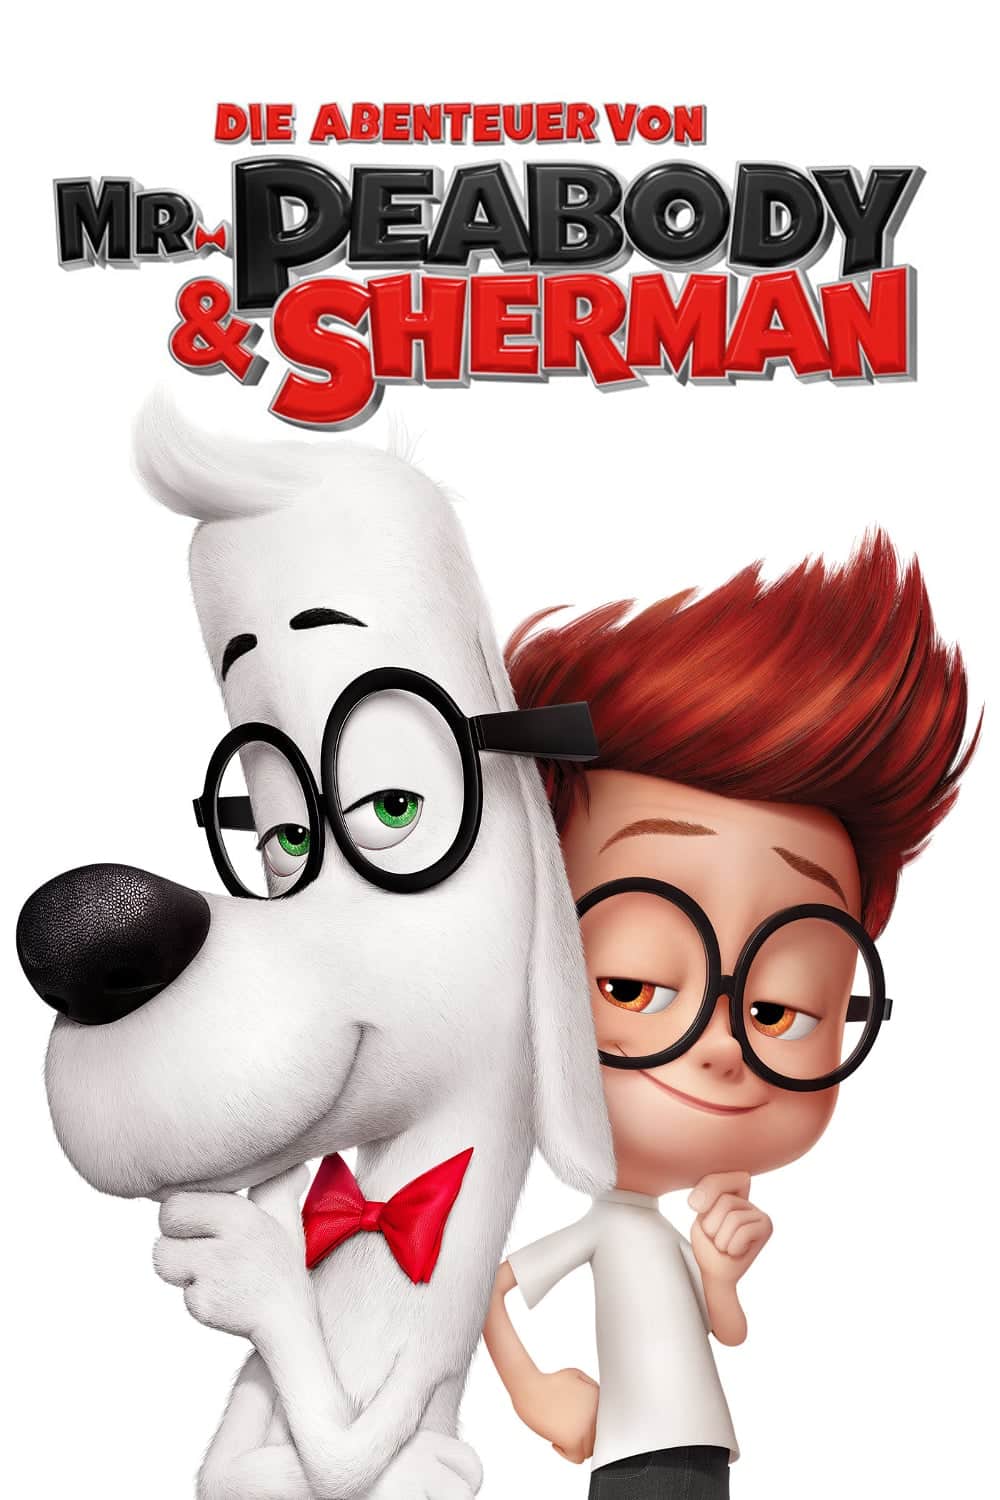 Plakat von "Die Abenteuer von Mr. Peabody & Sherman"